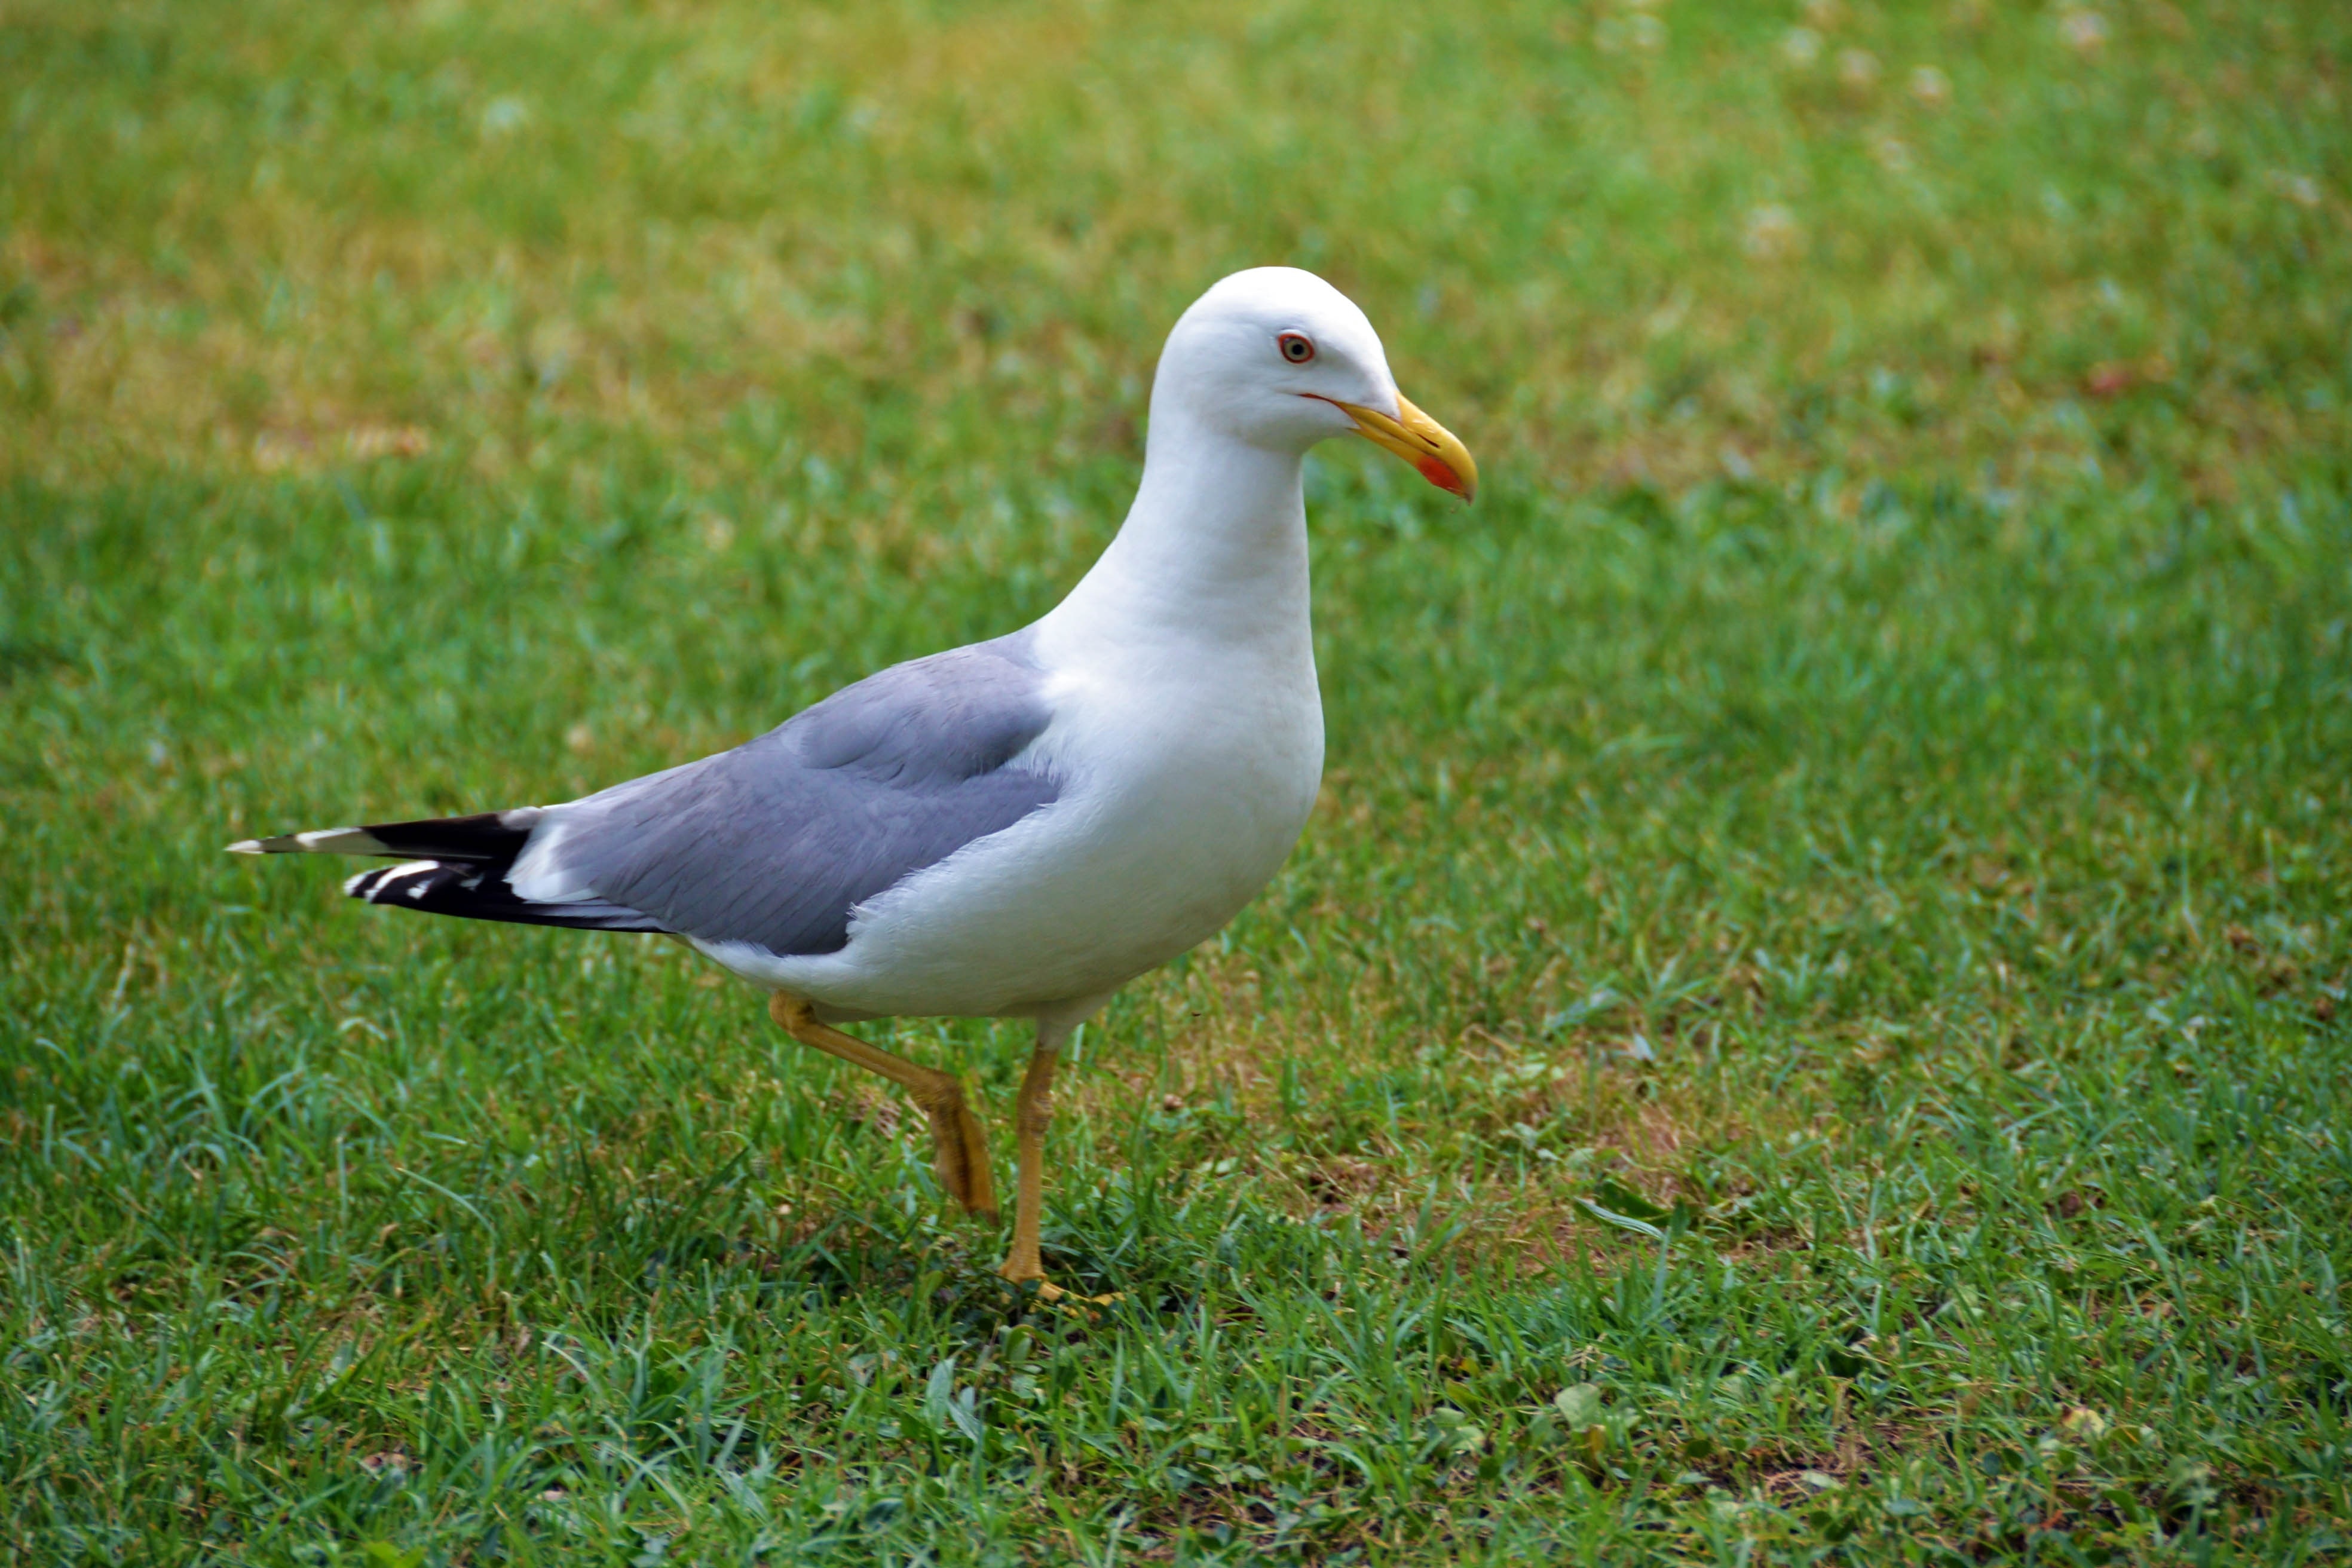 white seagull